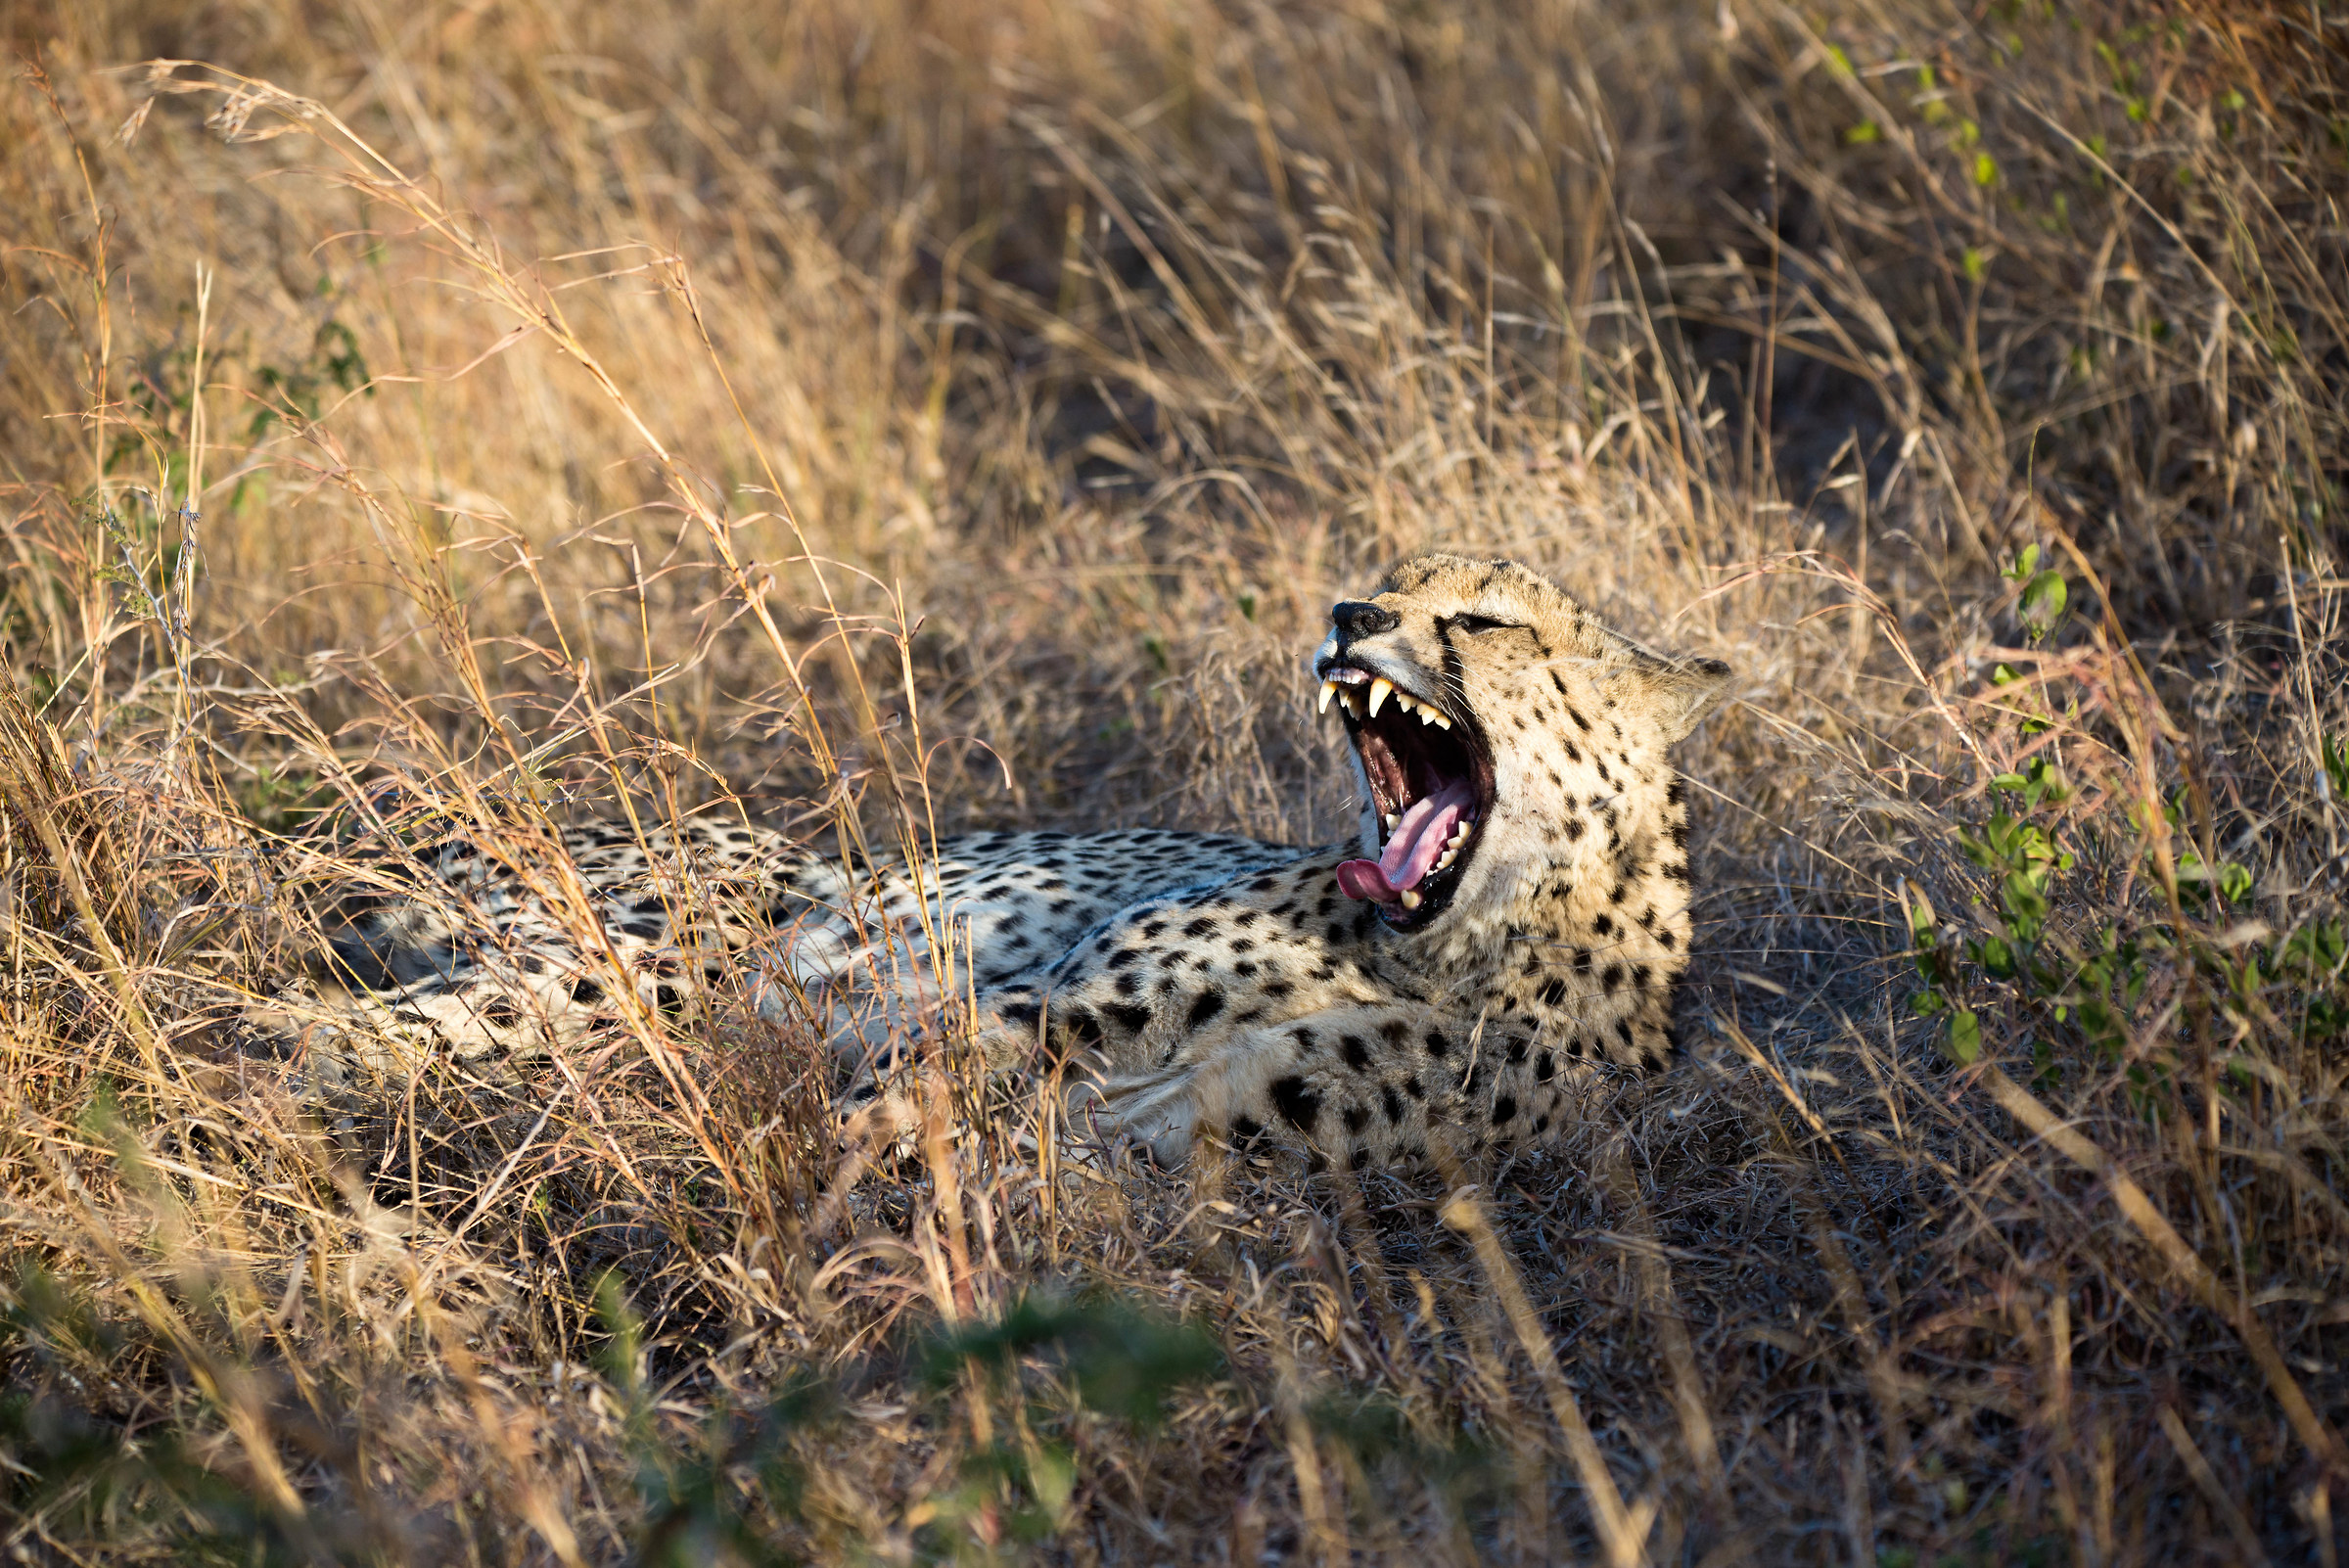 Cheetah at sunset...